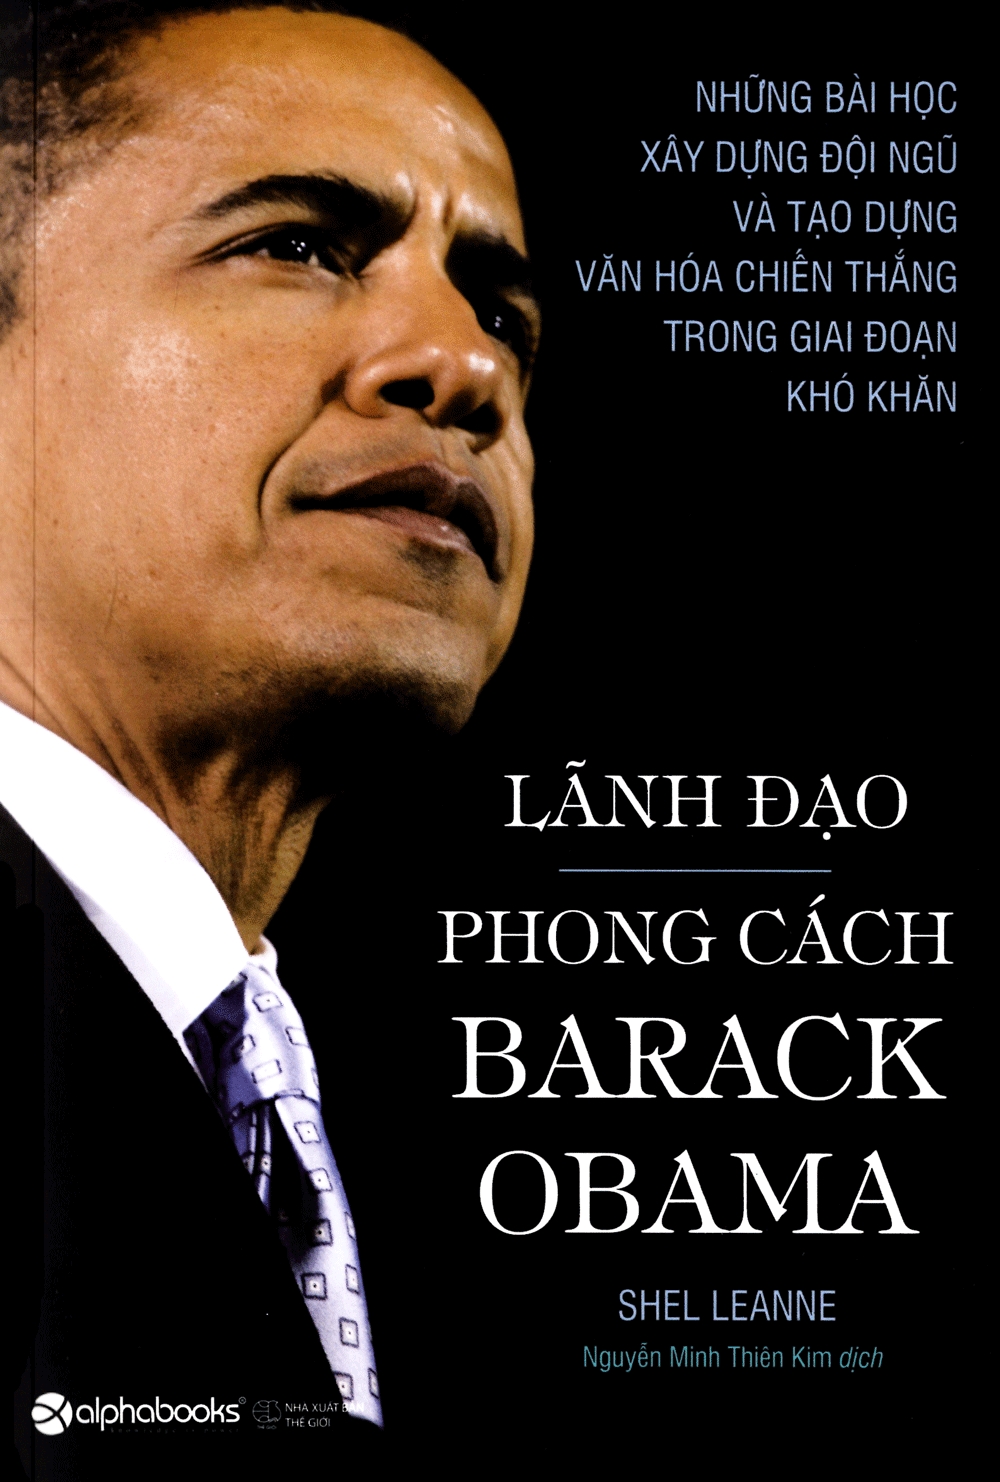 Sách nói: Lãnh Đạo Phong Cách Barack Obama